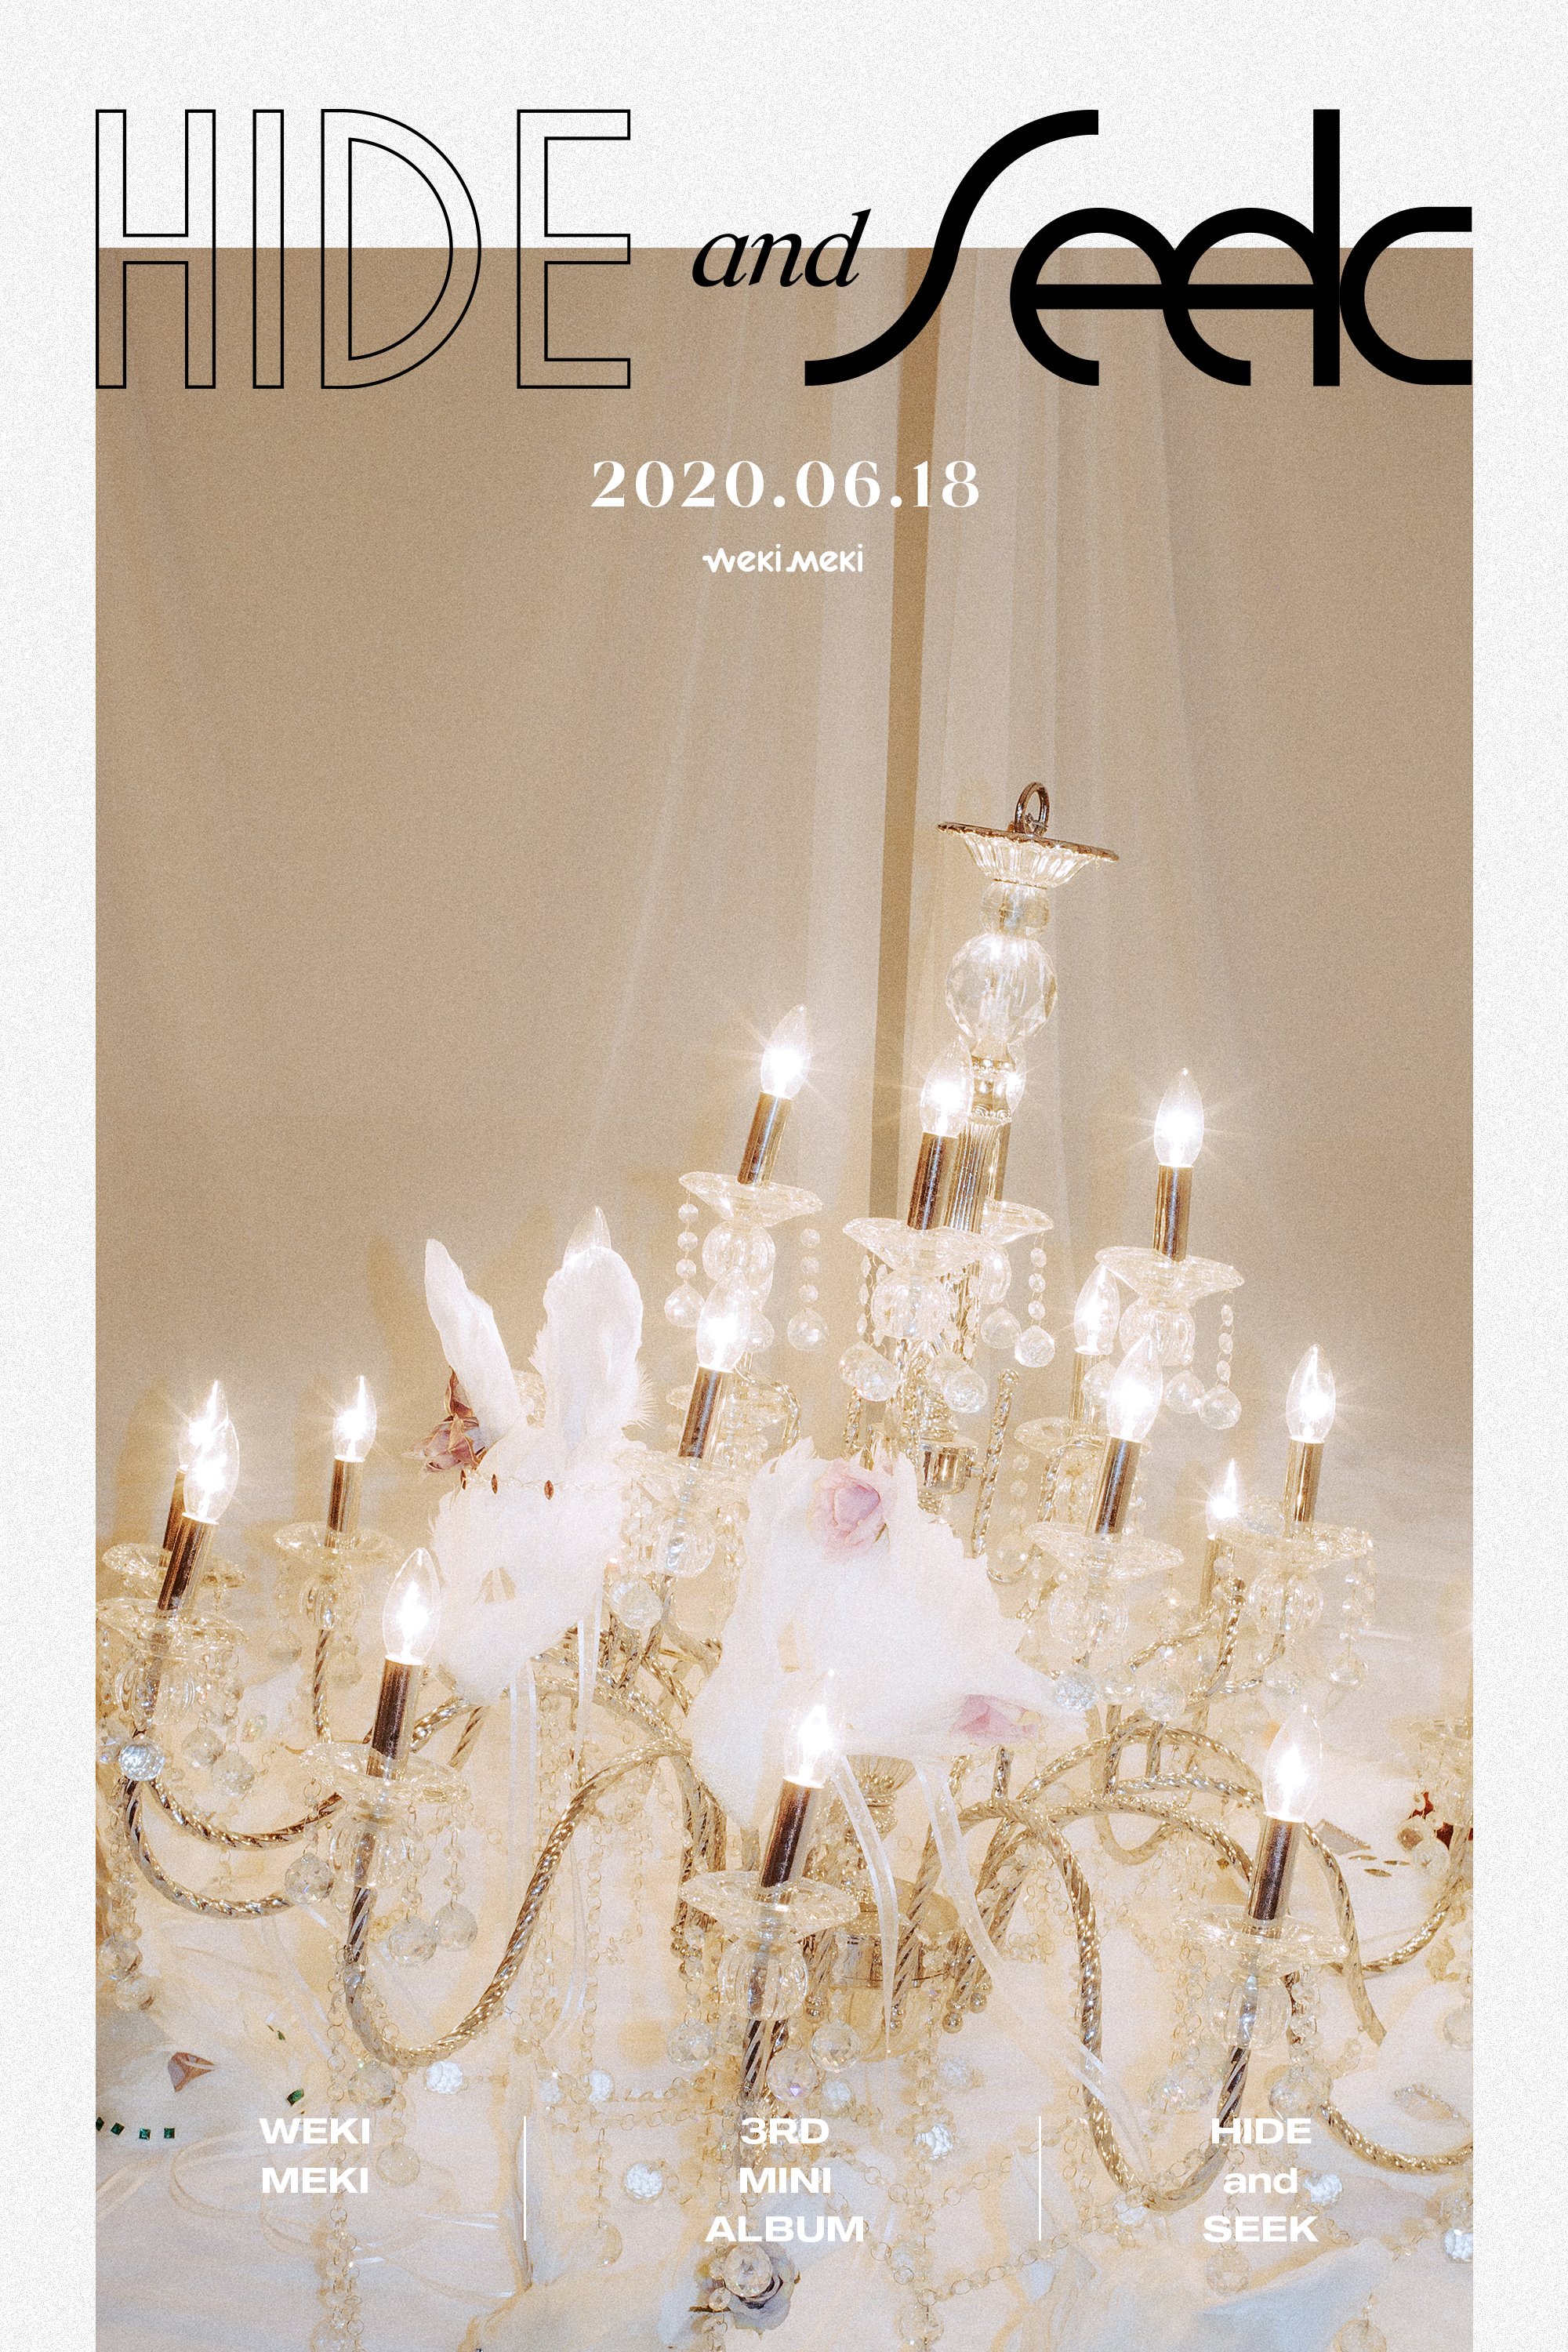 위키미키(Weki Meki) 3rd Mini Album <HIDE and SEEK> 2020. 06. 18 6PM